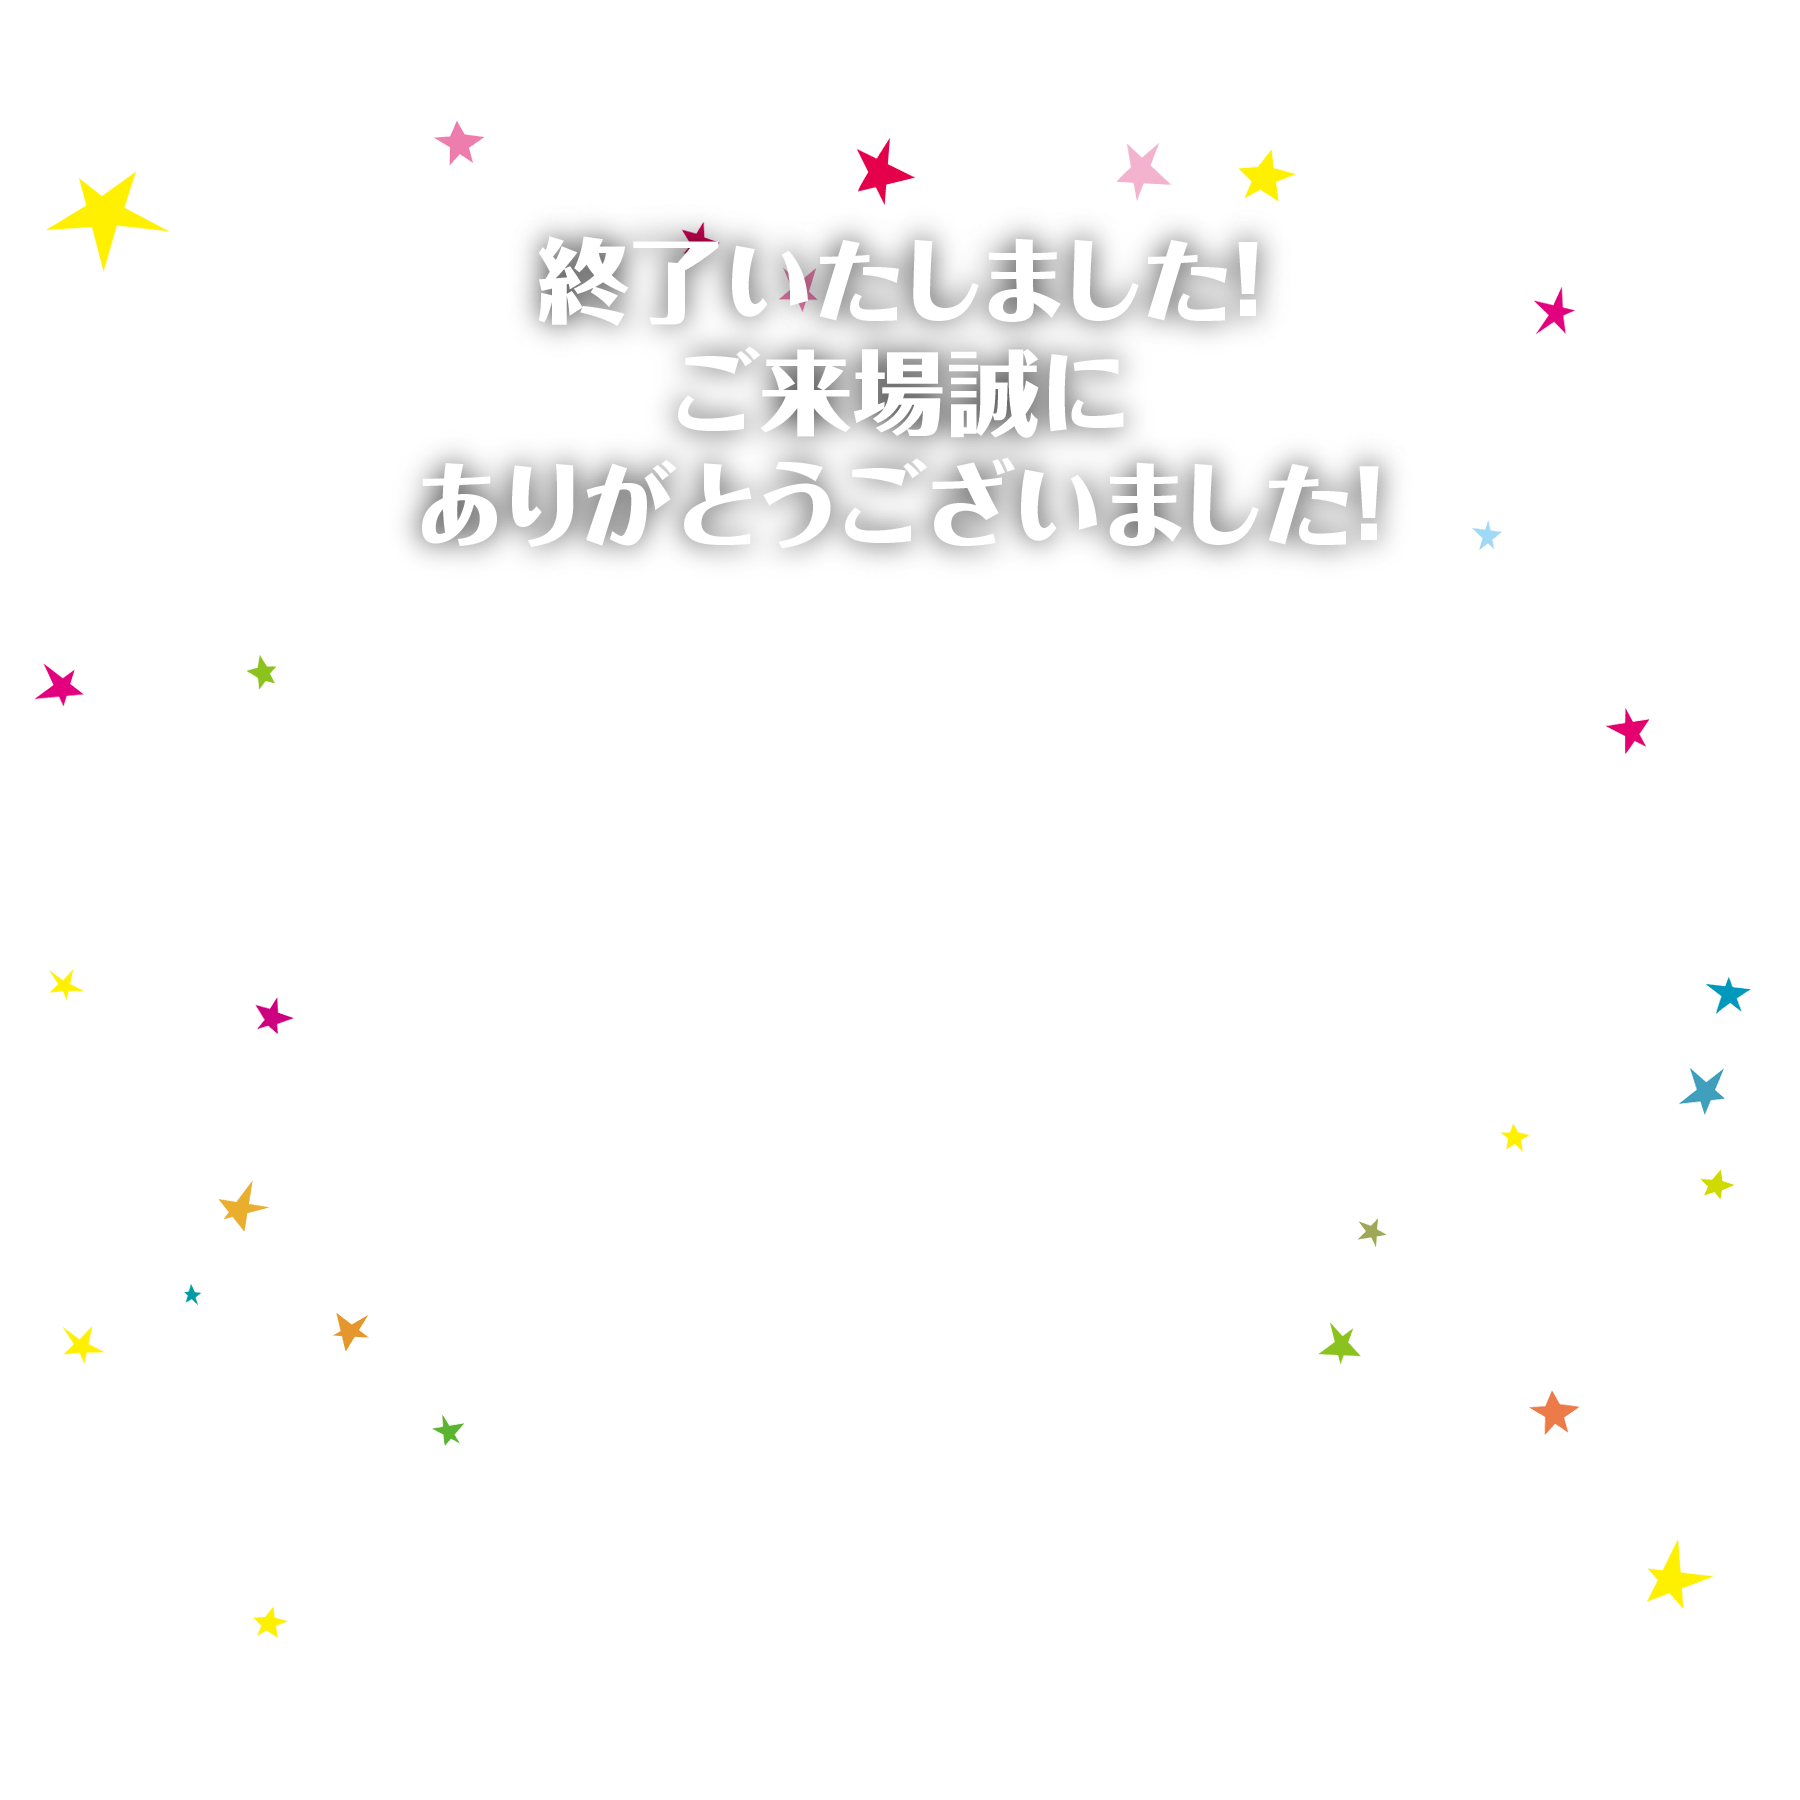 『RUSH INTO SUMMER! 2017』7.15sat-16sun グランフロント大阪北館4階 ナレッジシアター